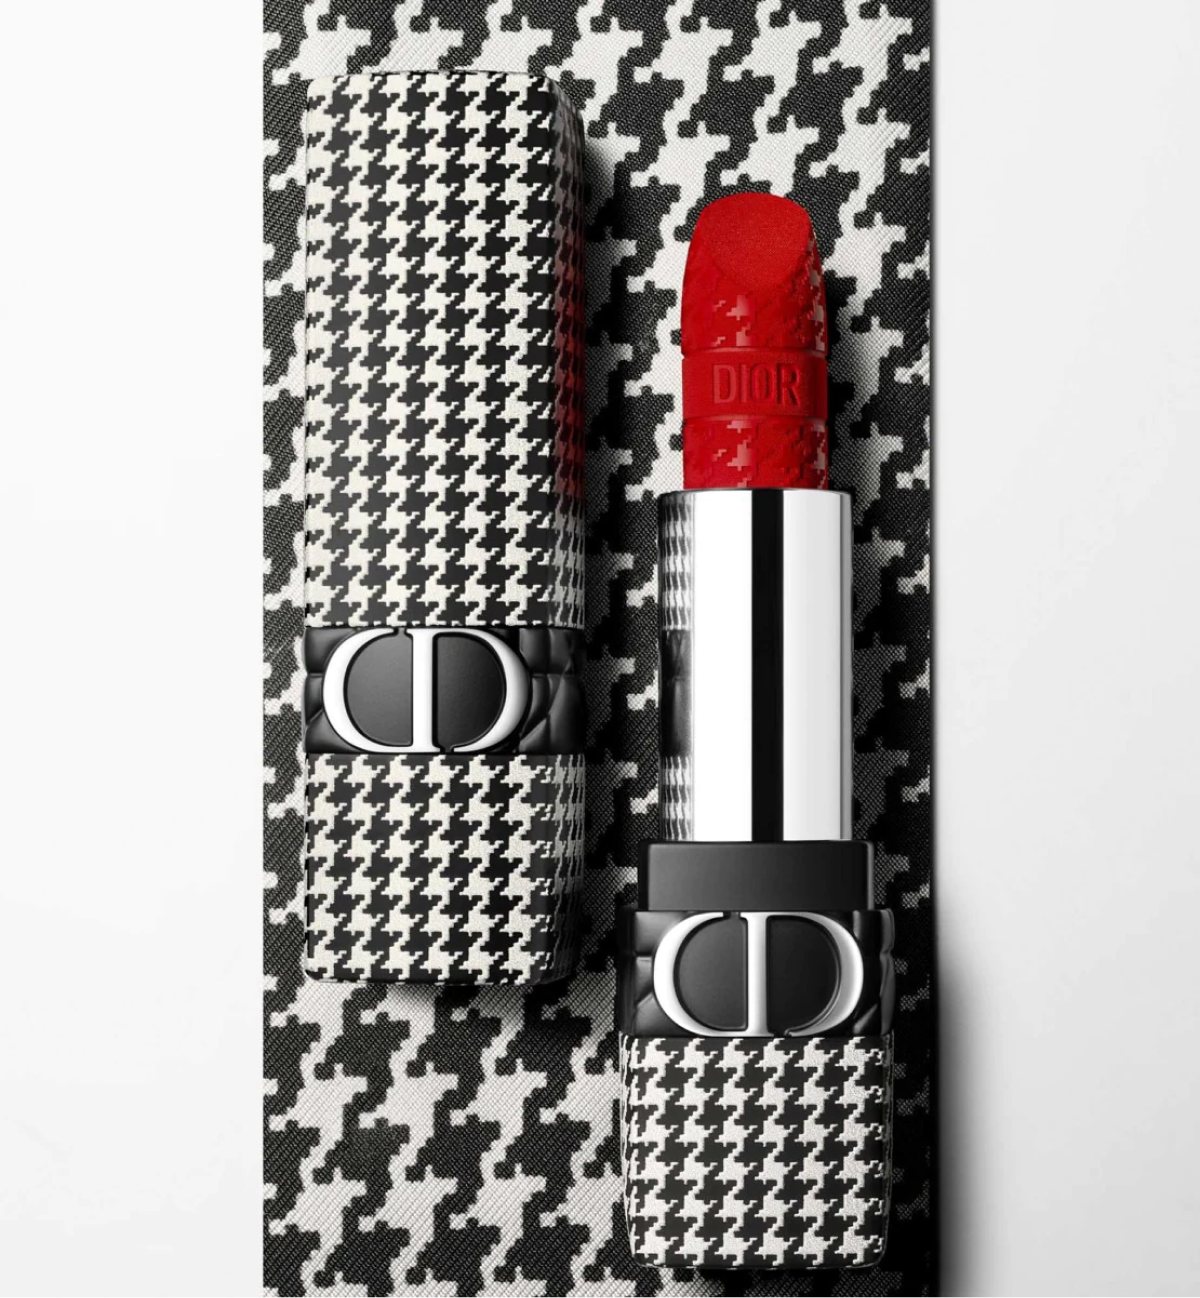 Dior представил новую коллекцию косметики и ароматов New Look (фото 4)